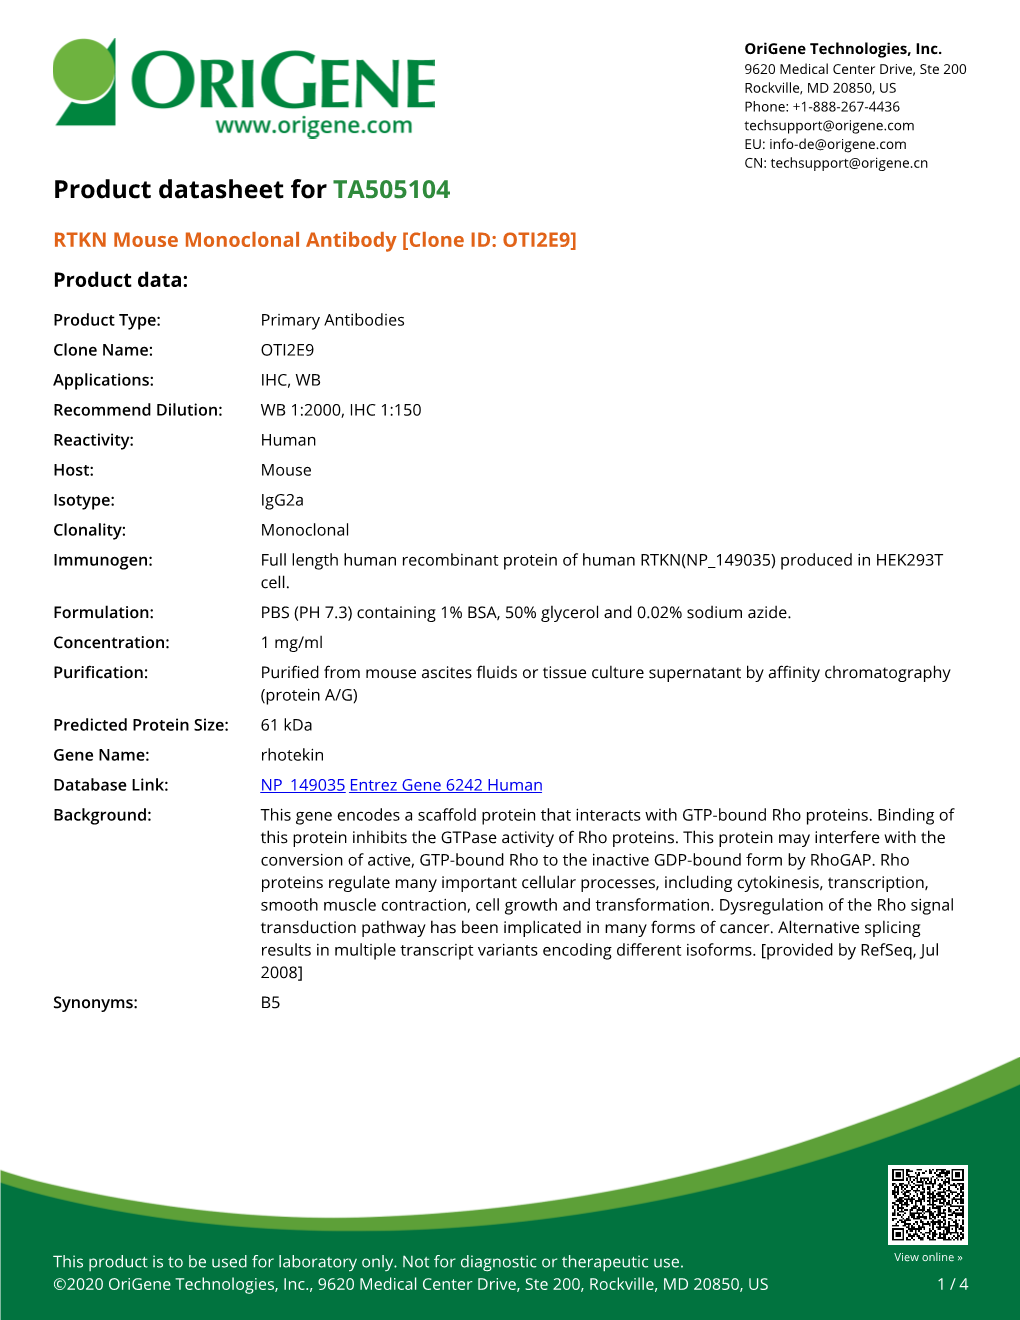 RTKN Mouse Monoclonal Antibody [Clone ID: OTI2E9] – TA505104